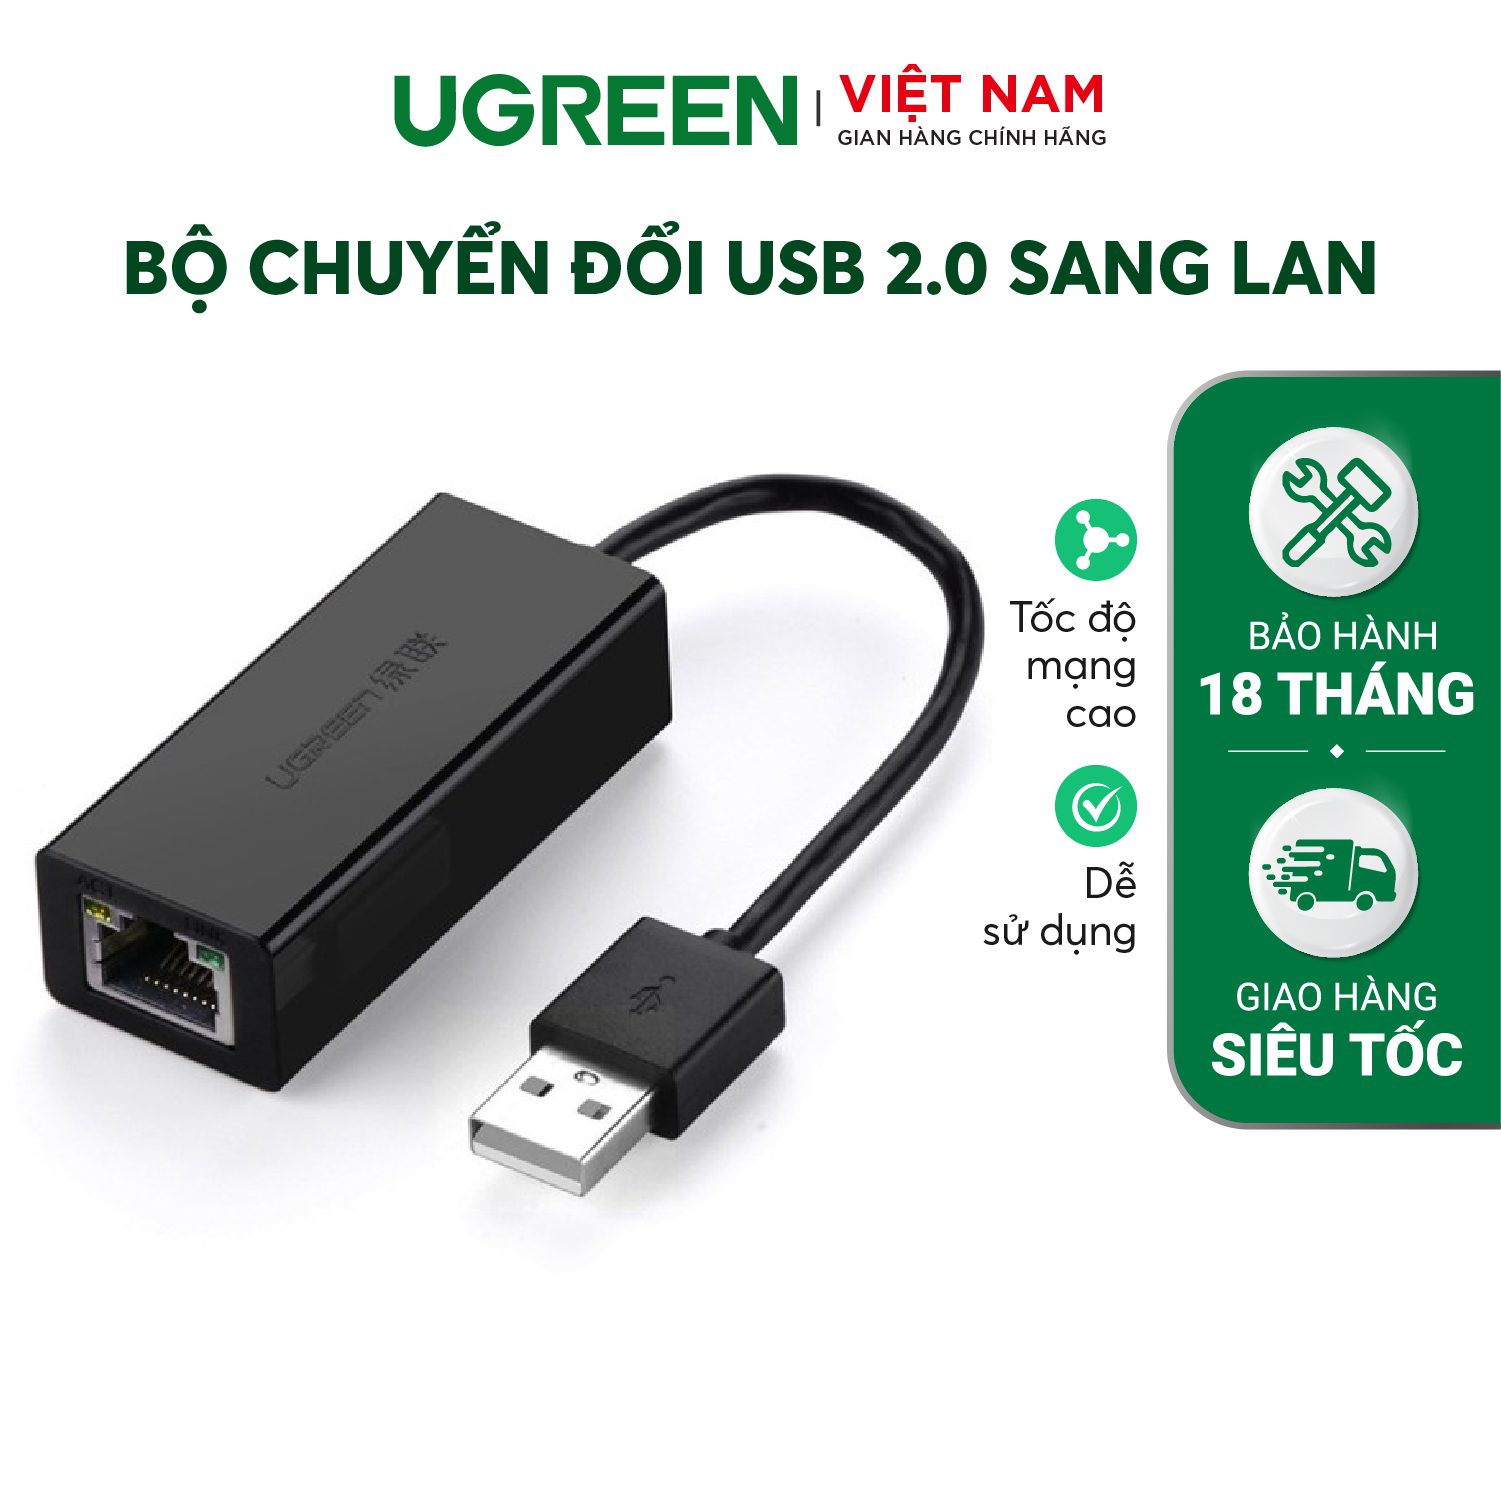 Bộ chuyển đổi USB 2.0 sang LAN 10/100 Mbps CR110 – Ugreen Việt Nam